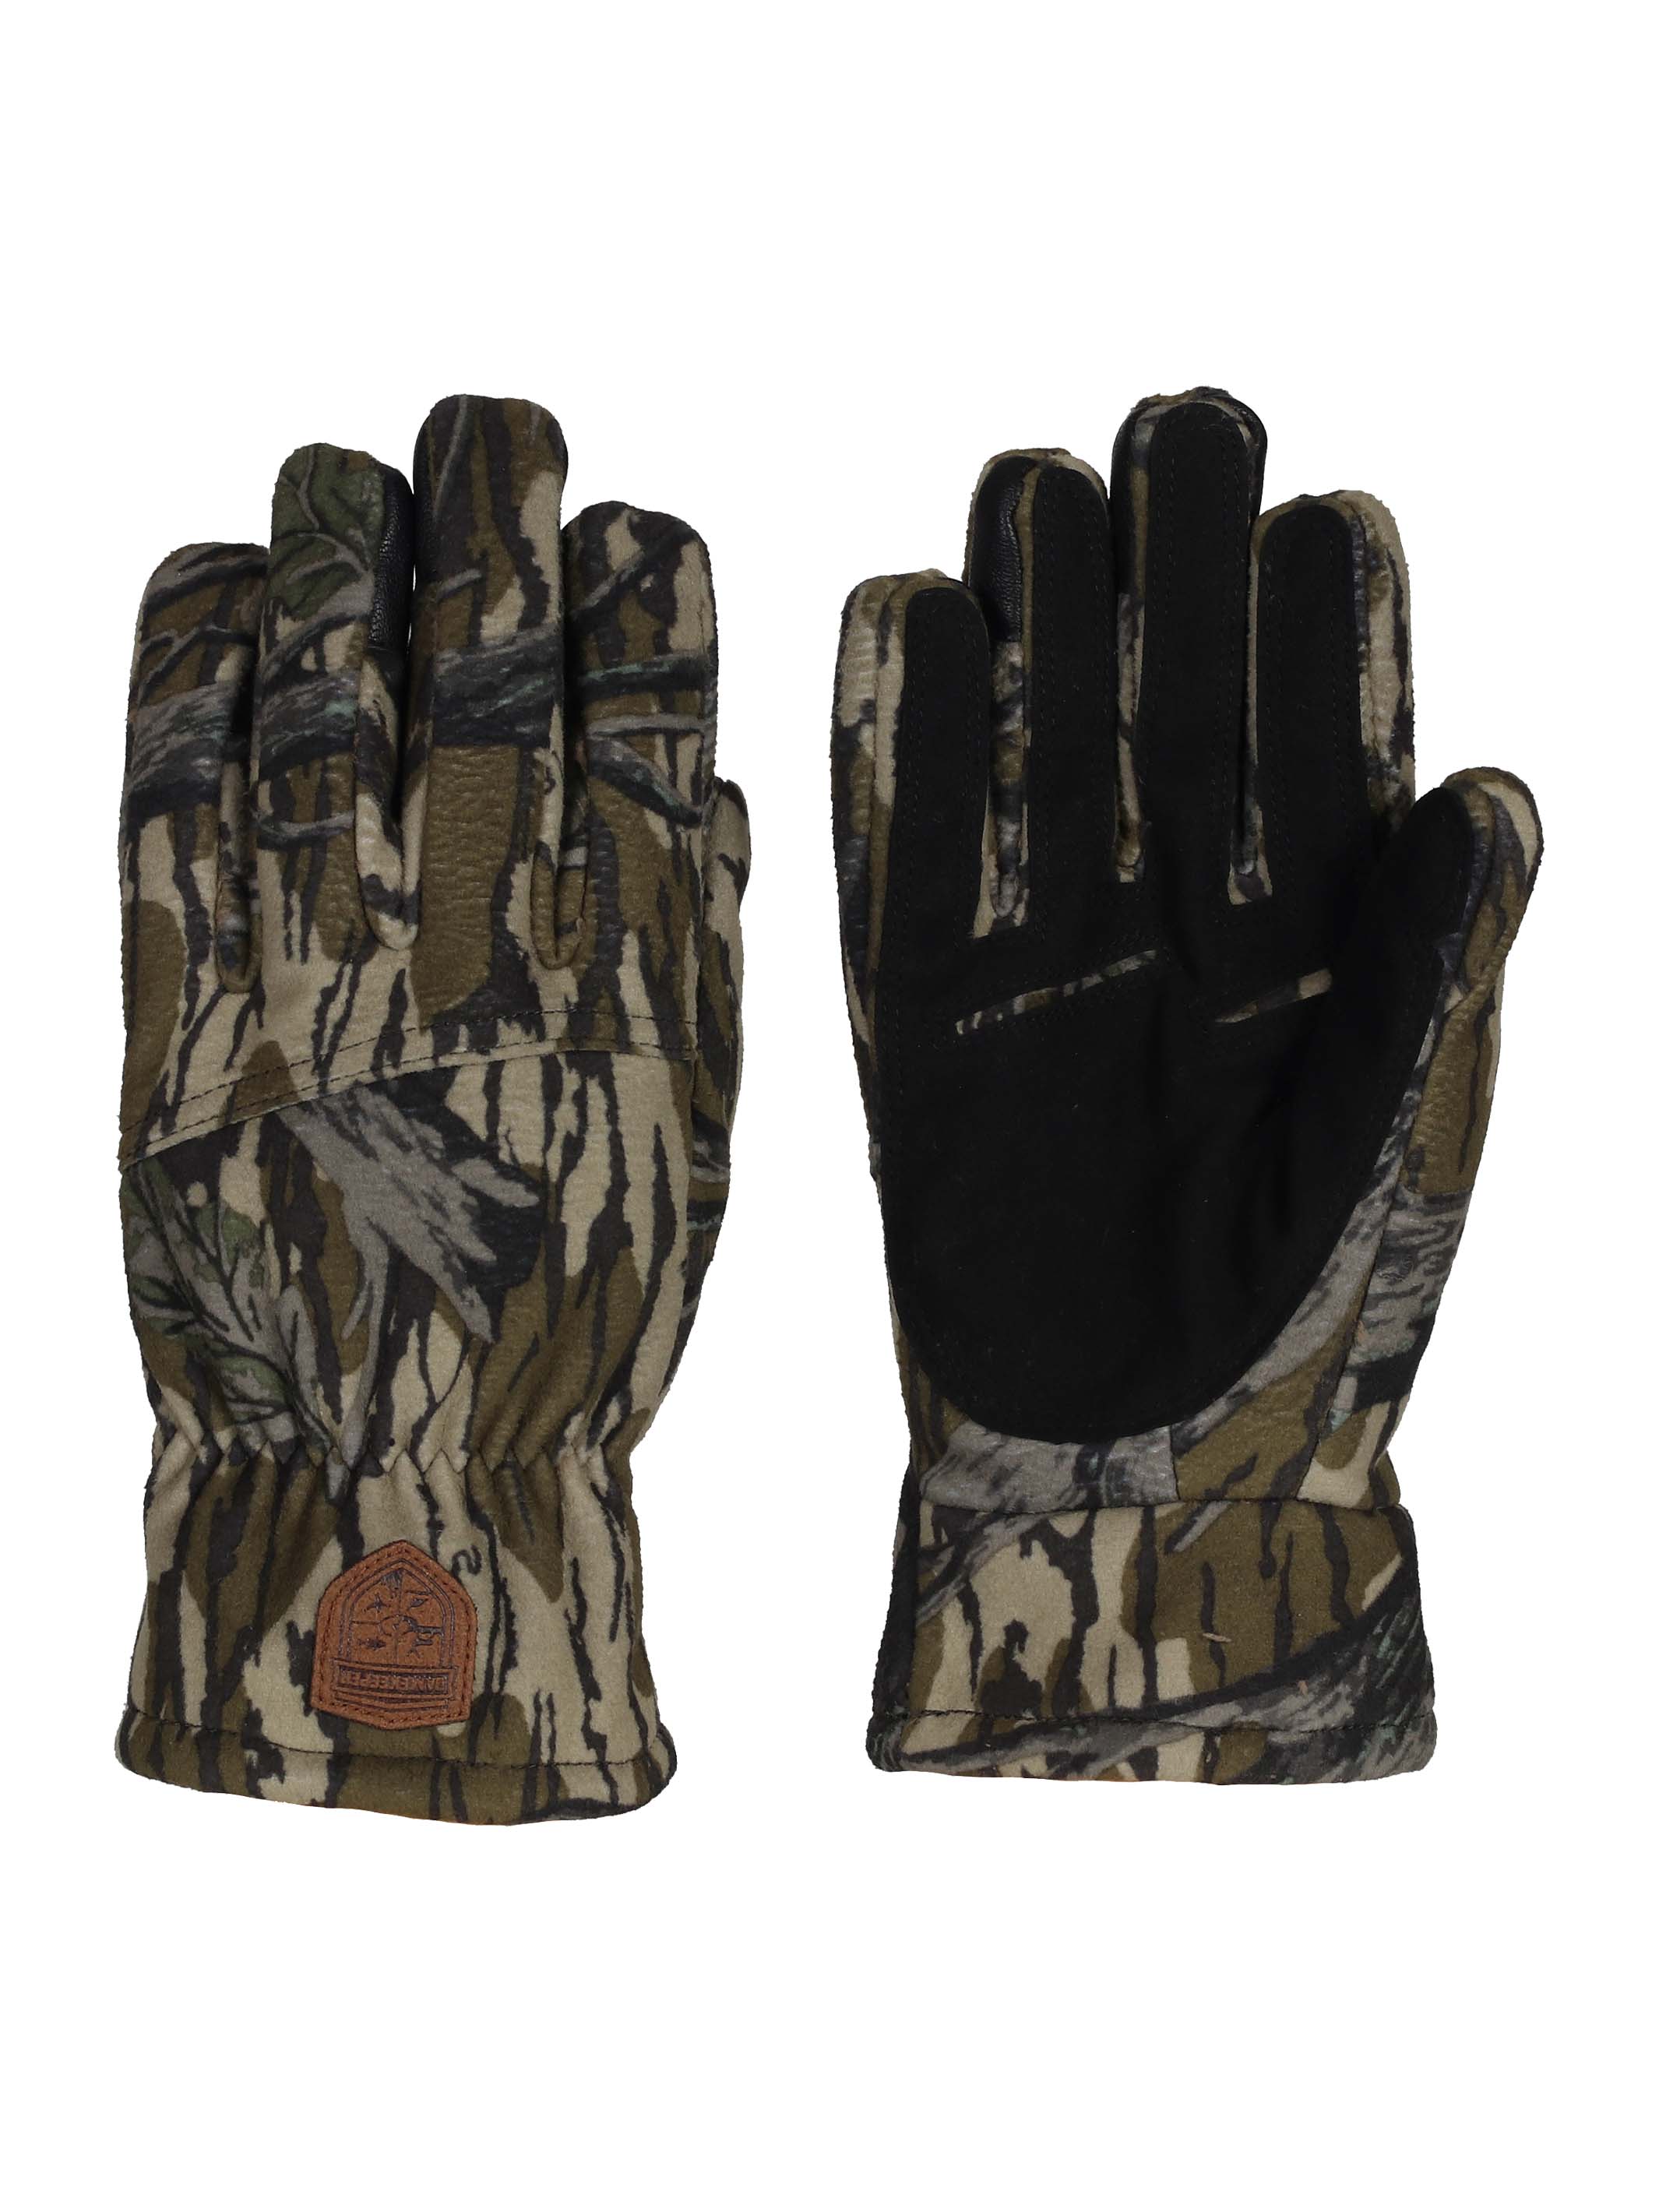 Mossy Oak Gamekeeper Harvester Gloves - 113804TSD - Mossy Oak Original Treestand Camo 